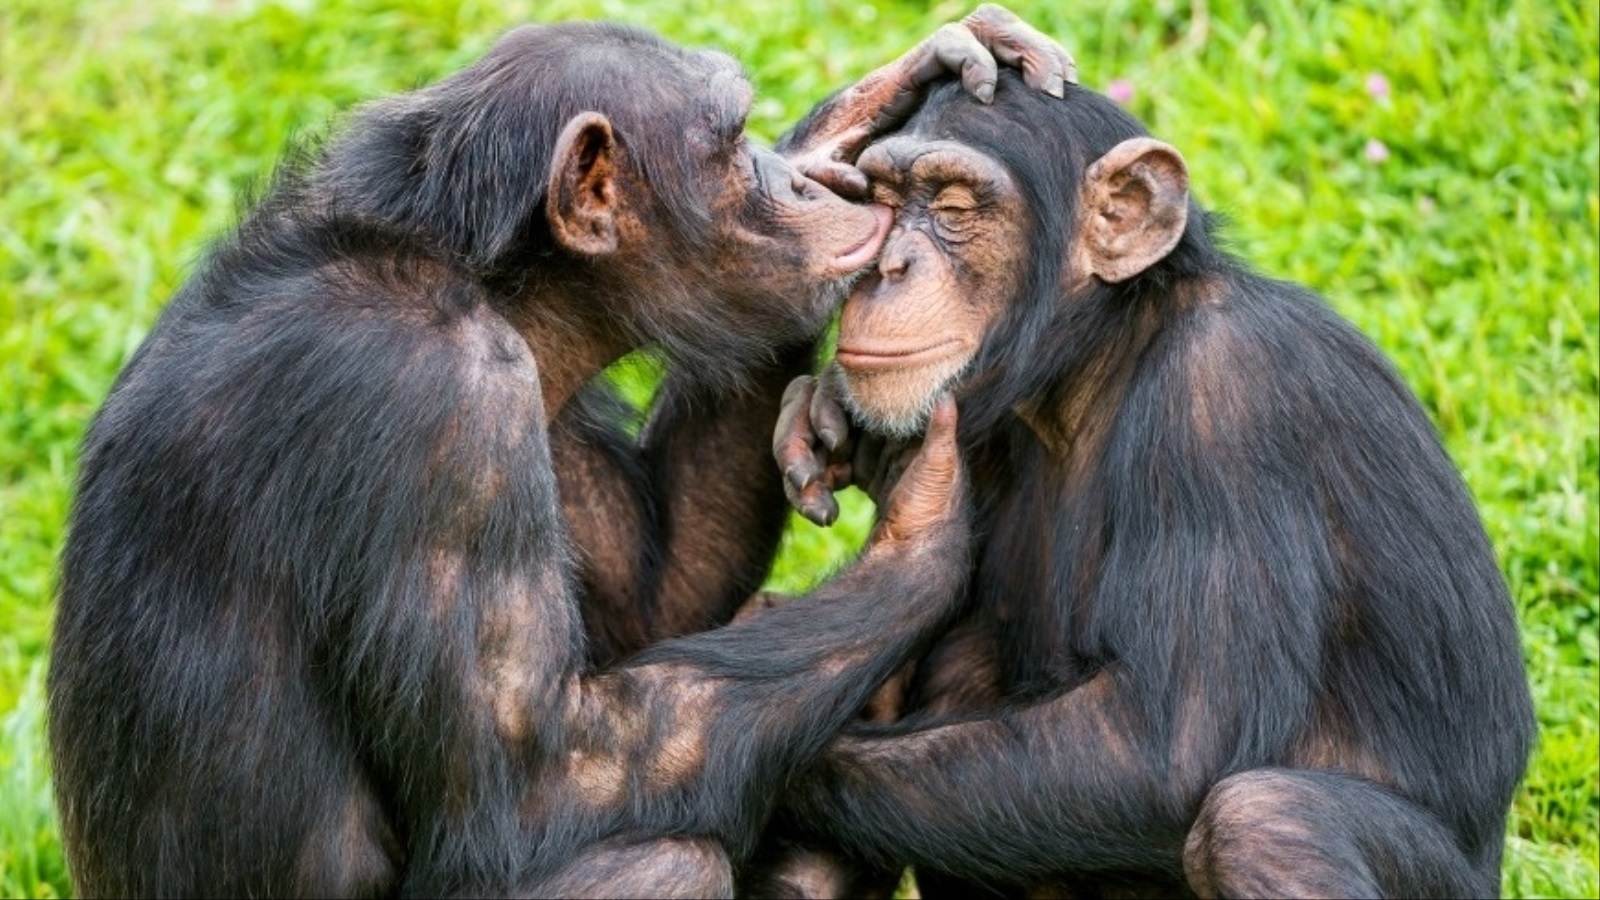 تتشارك جماعات الشمبانزي معنا في صفة أخرى كنا نعتبرها خاصة بالبشر، وهي التعاطف